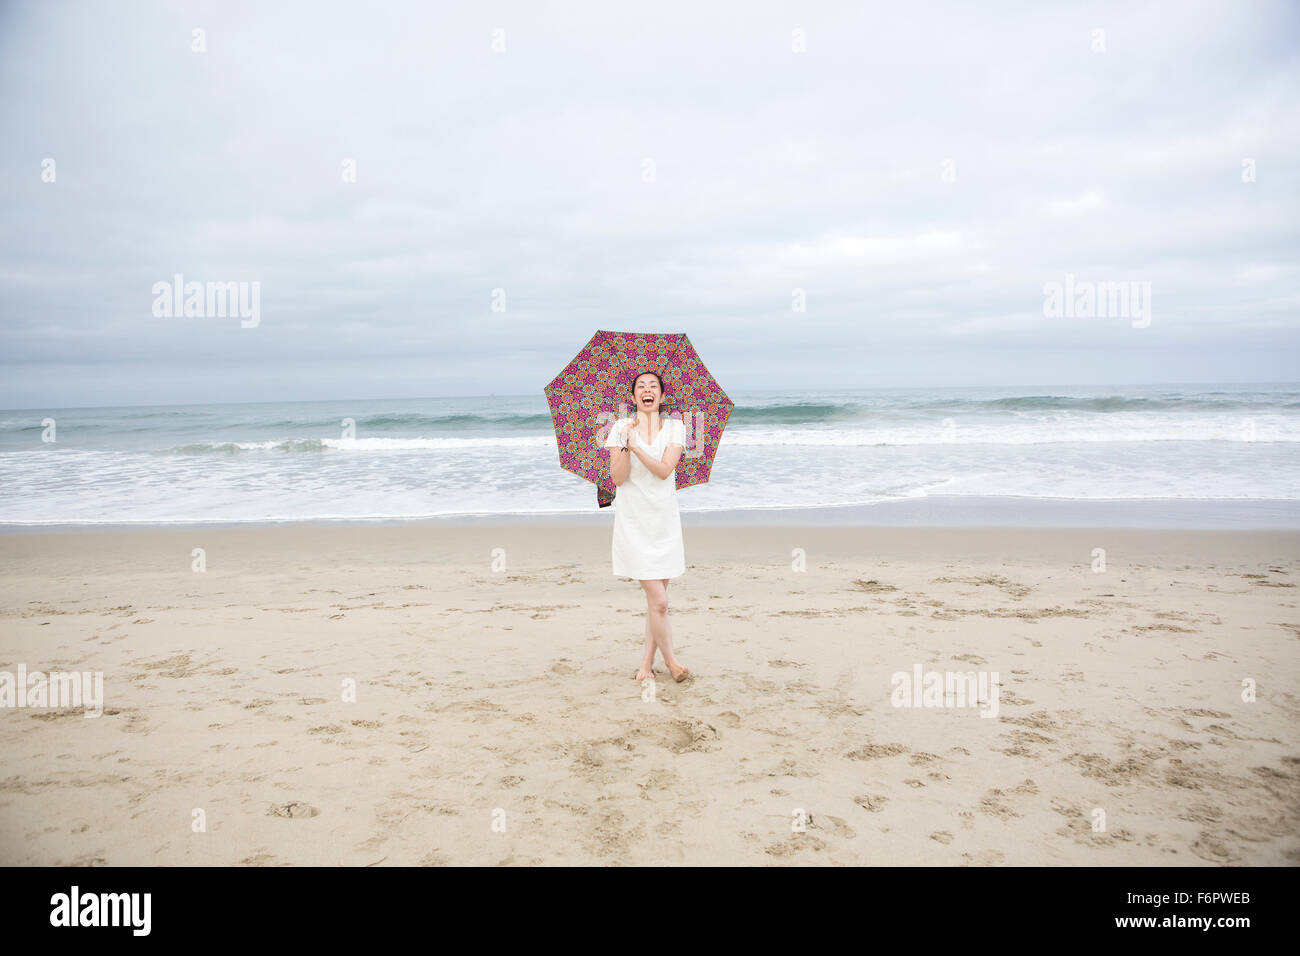 Mujer riendo con sombrilla en la playa Foto de stock